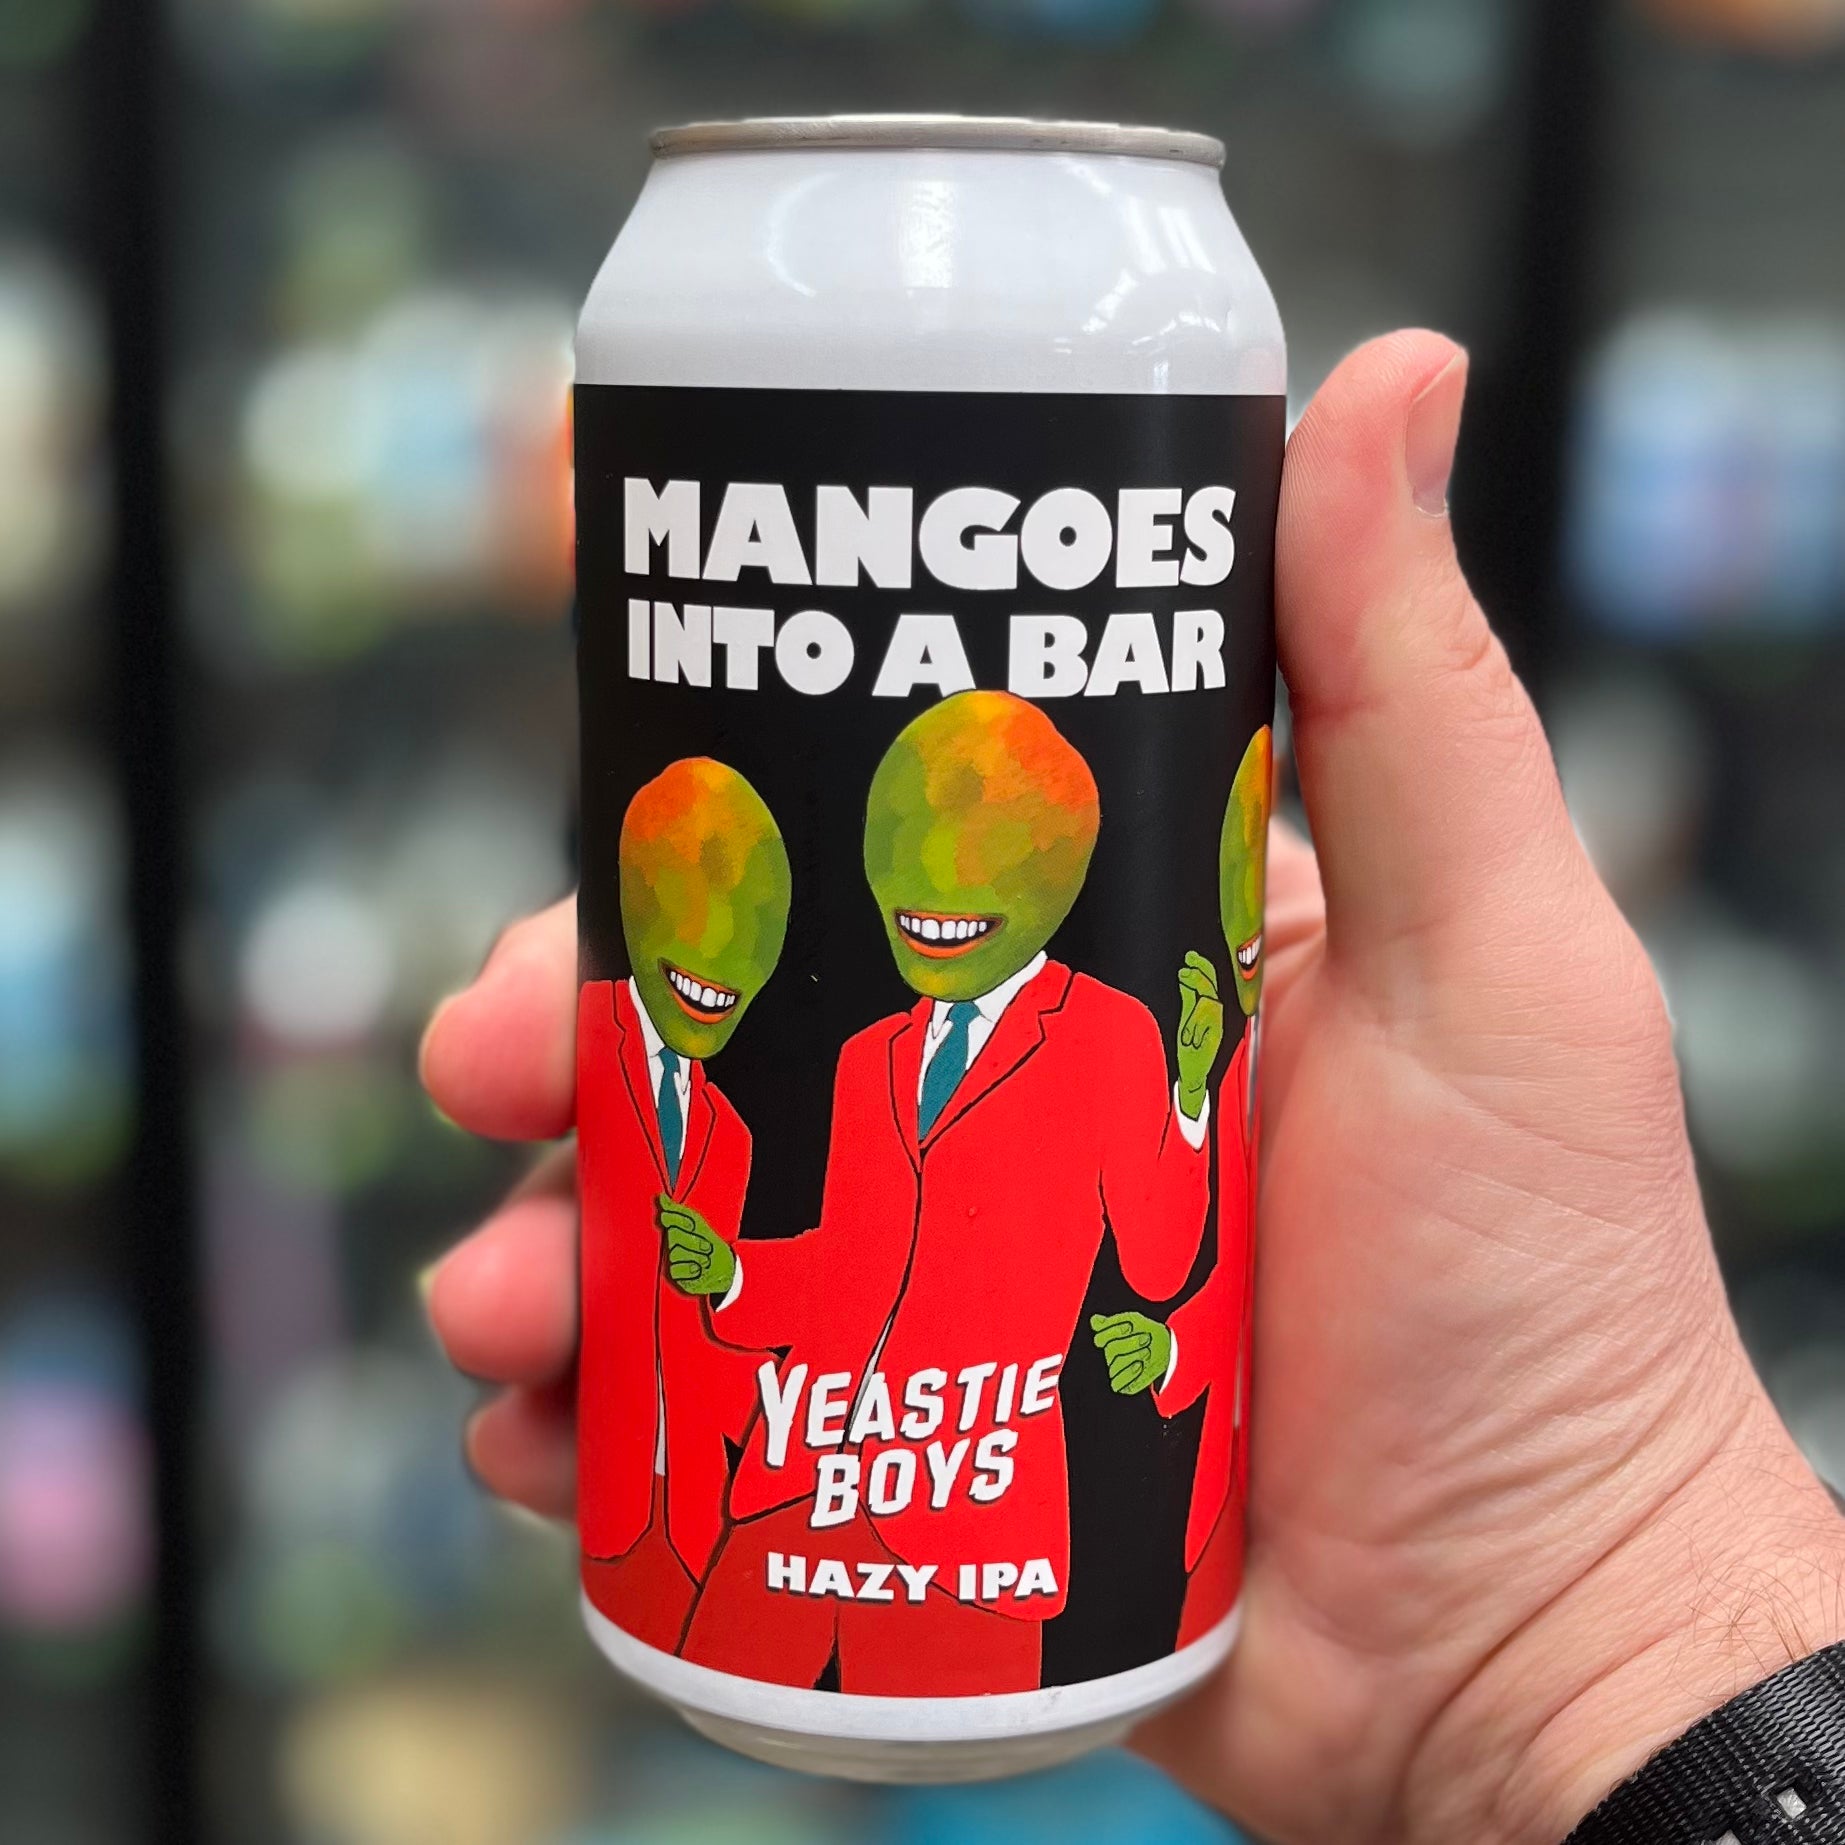 Mangoes Into A Bar Hazy IPA